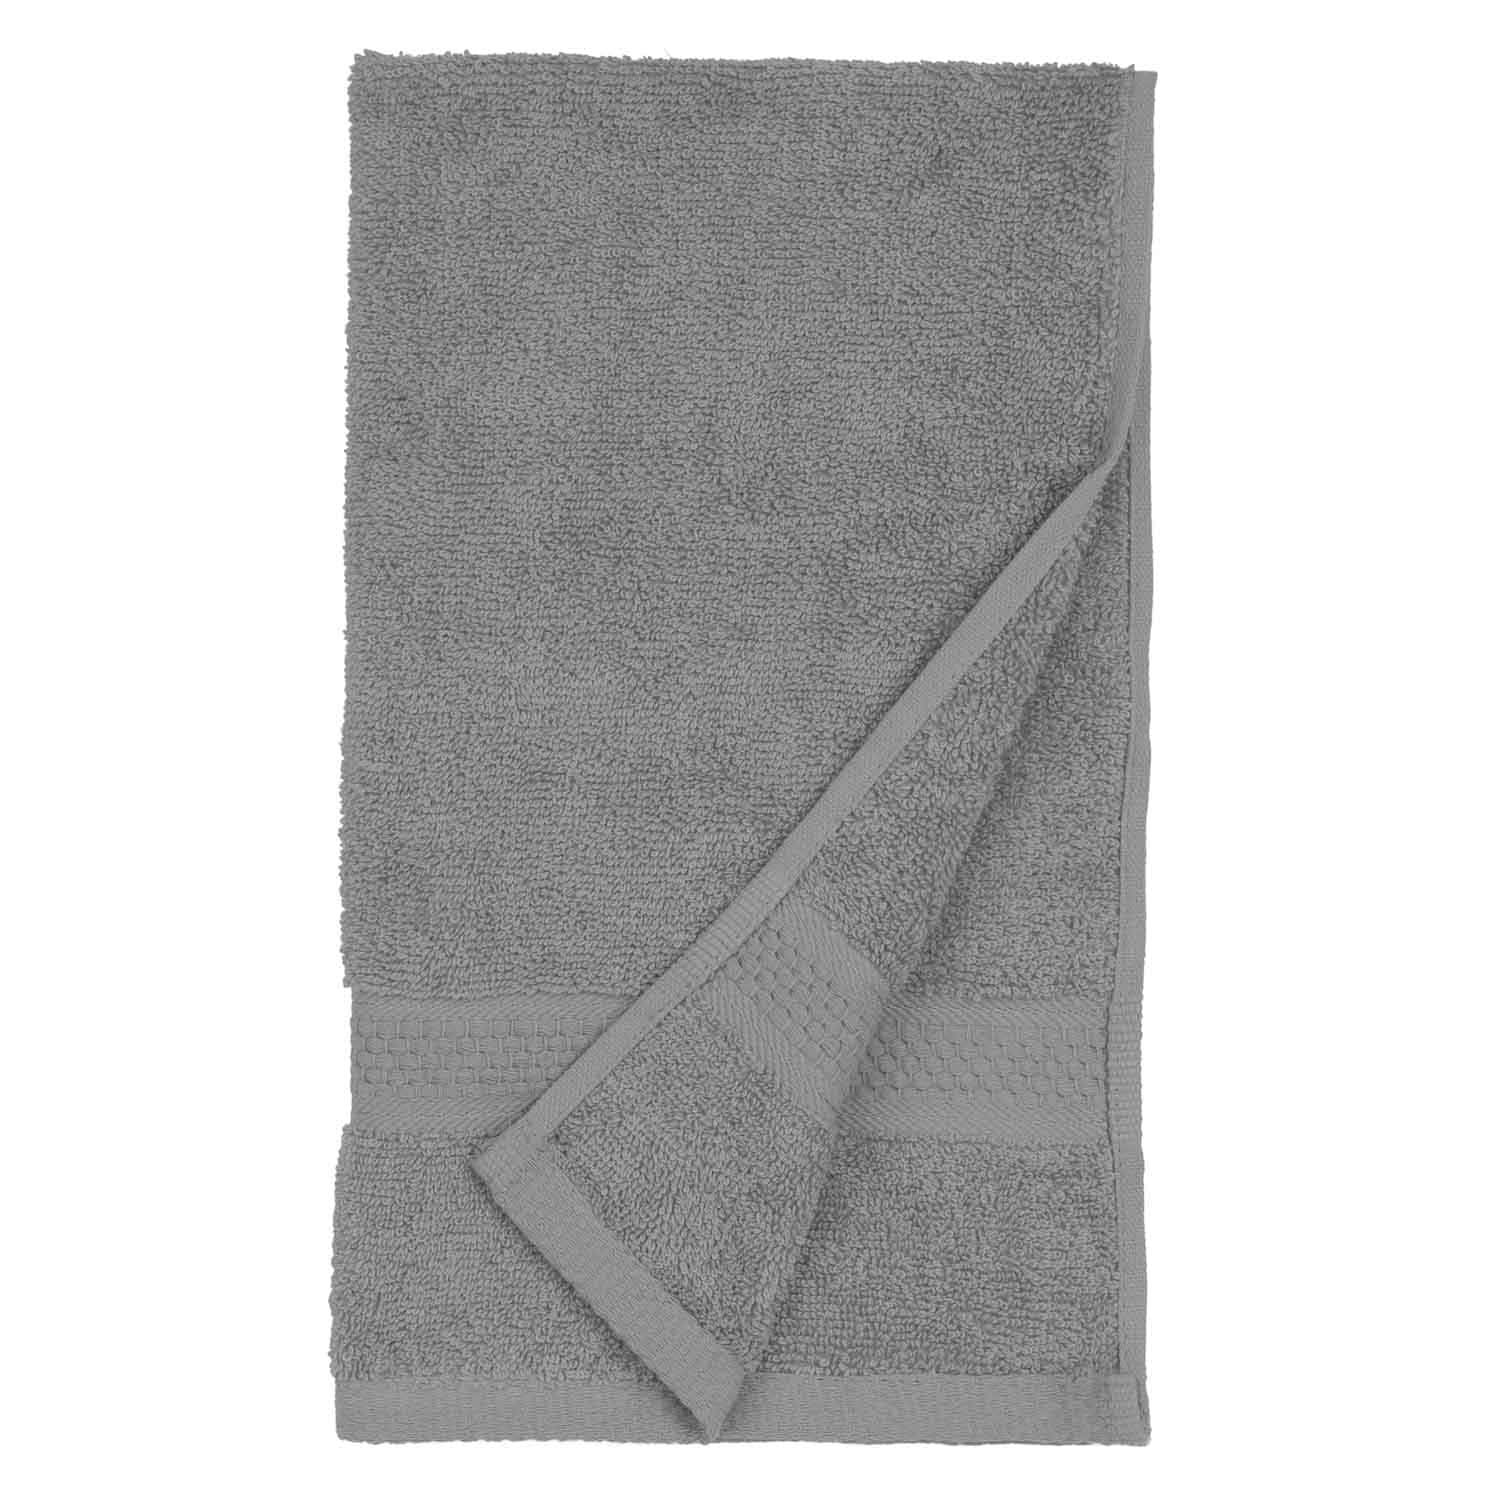 American Dawn | Jumbo 16X28 Inch Flannel Grey Car Wash Towel